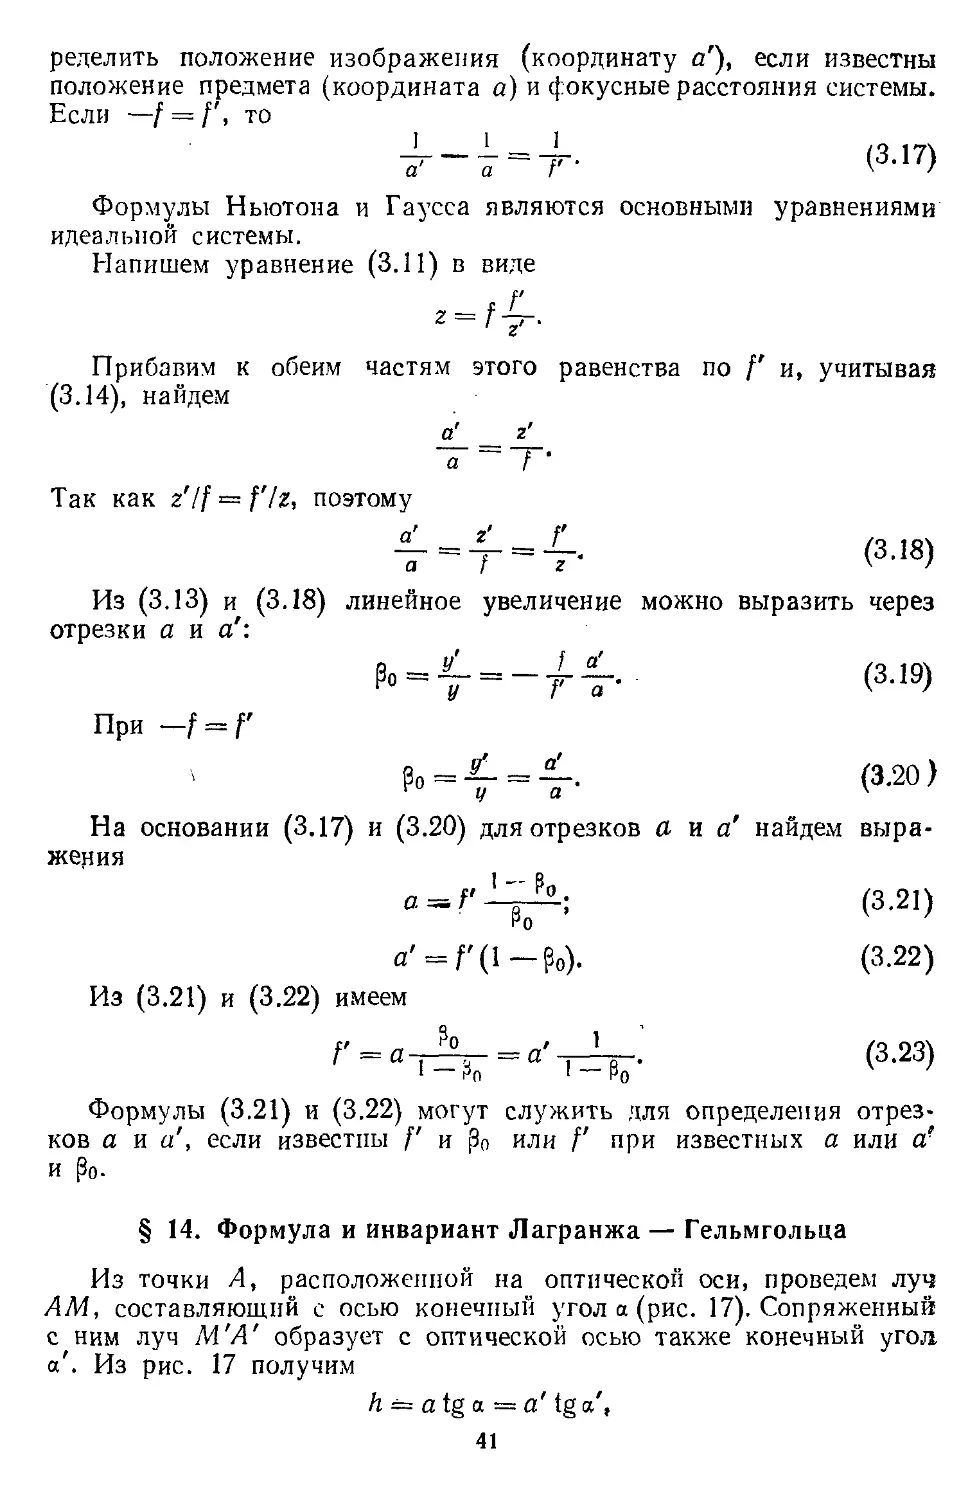 § 14. Формула и инвариант Лагранжа—Гельмгольца